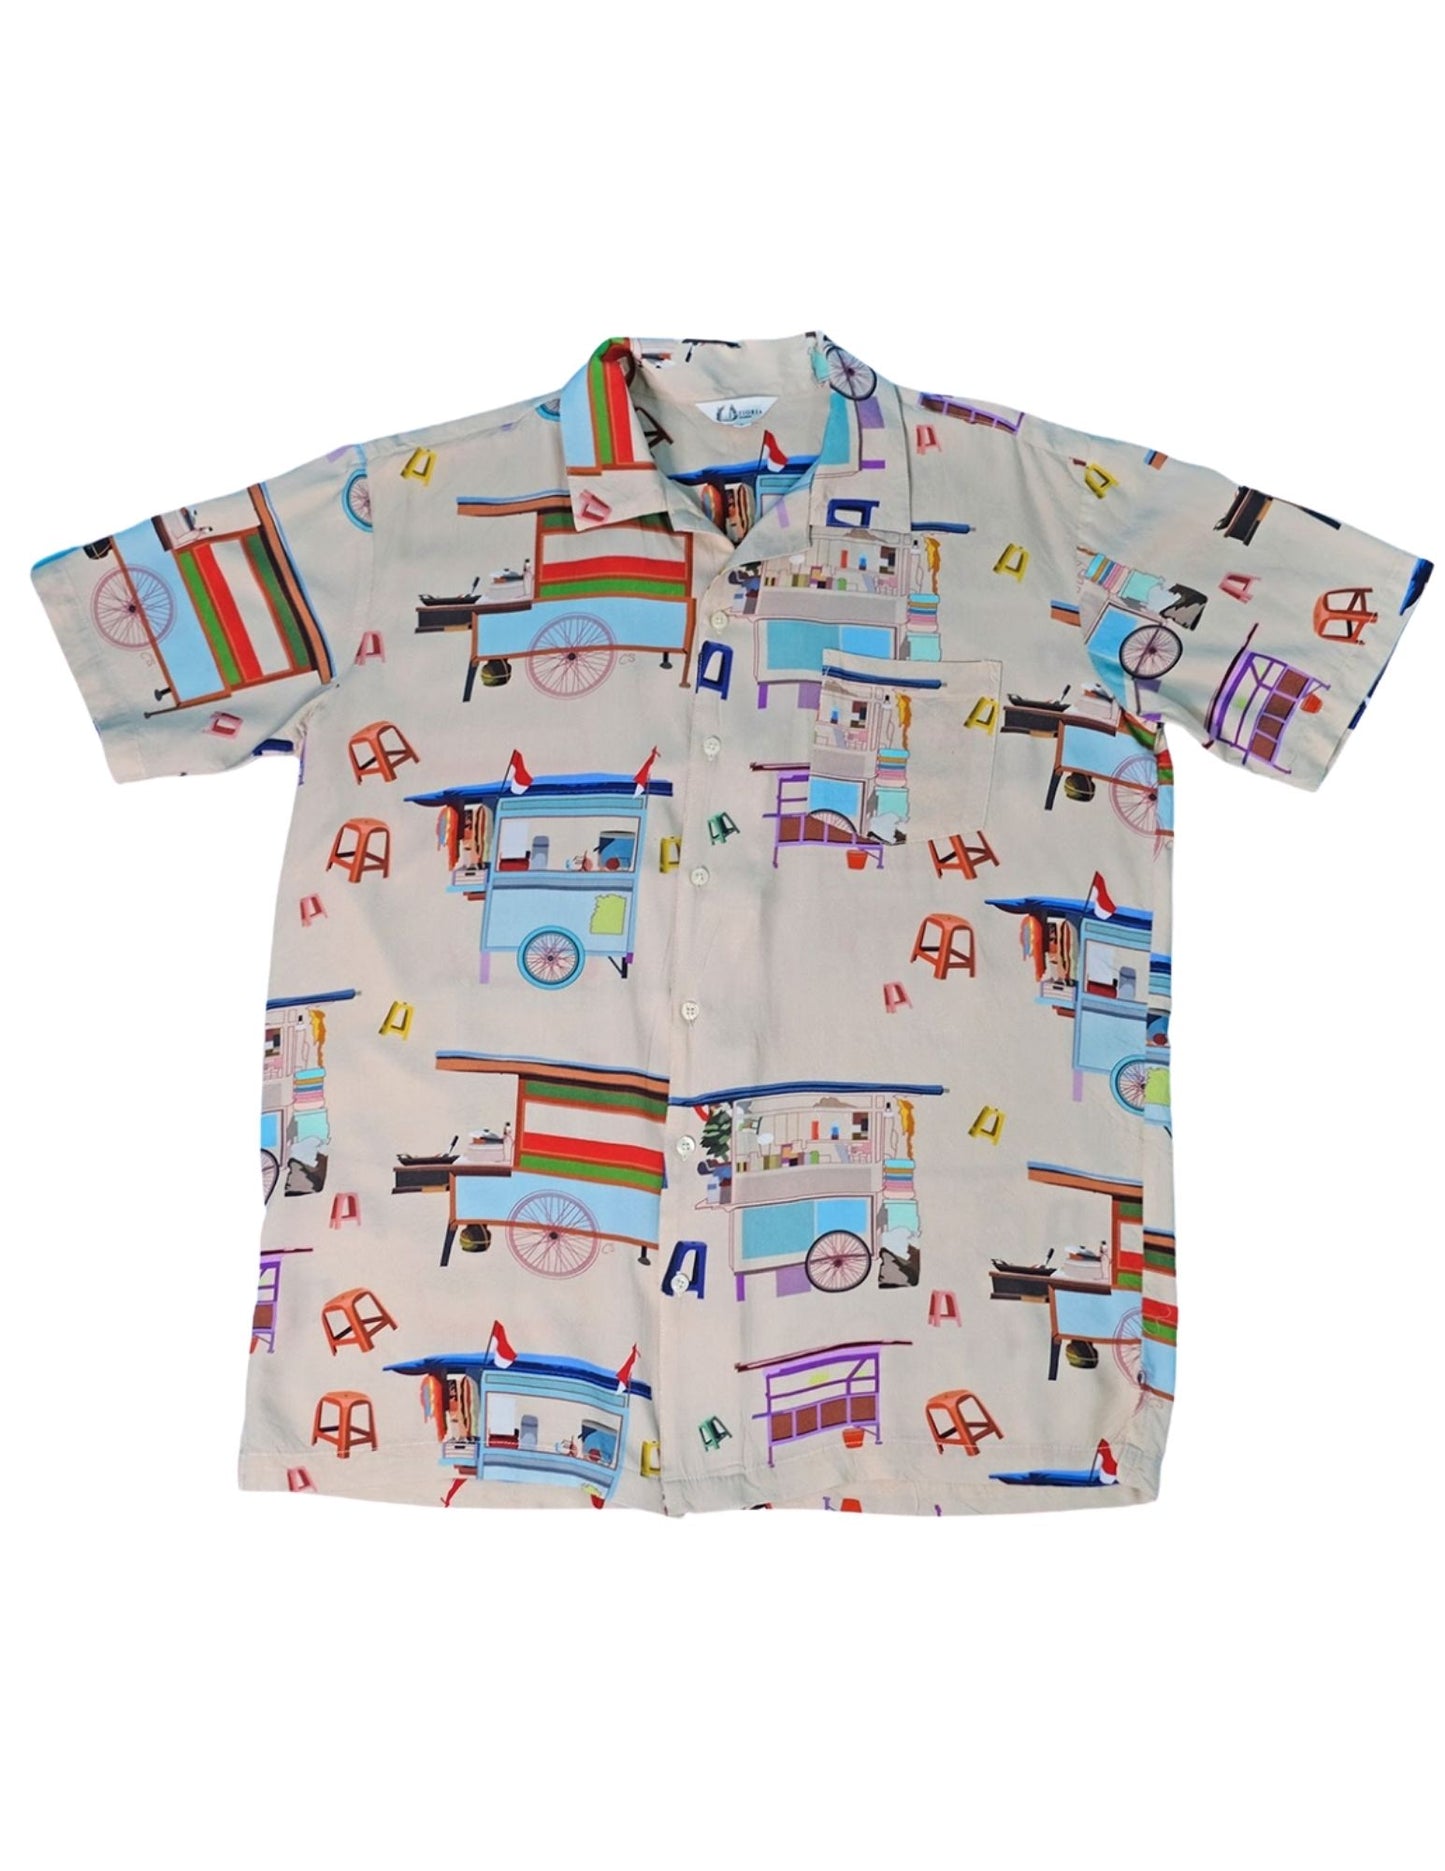 Tioria by Caramia "Street Vendor" Summer Shirts